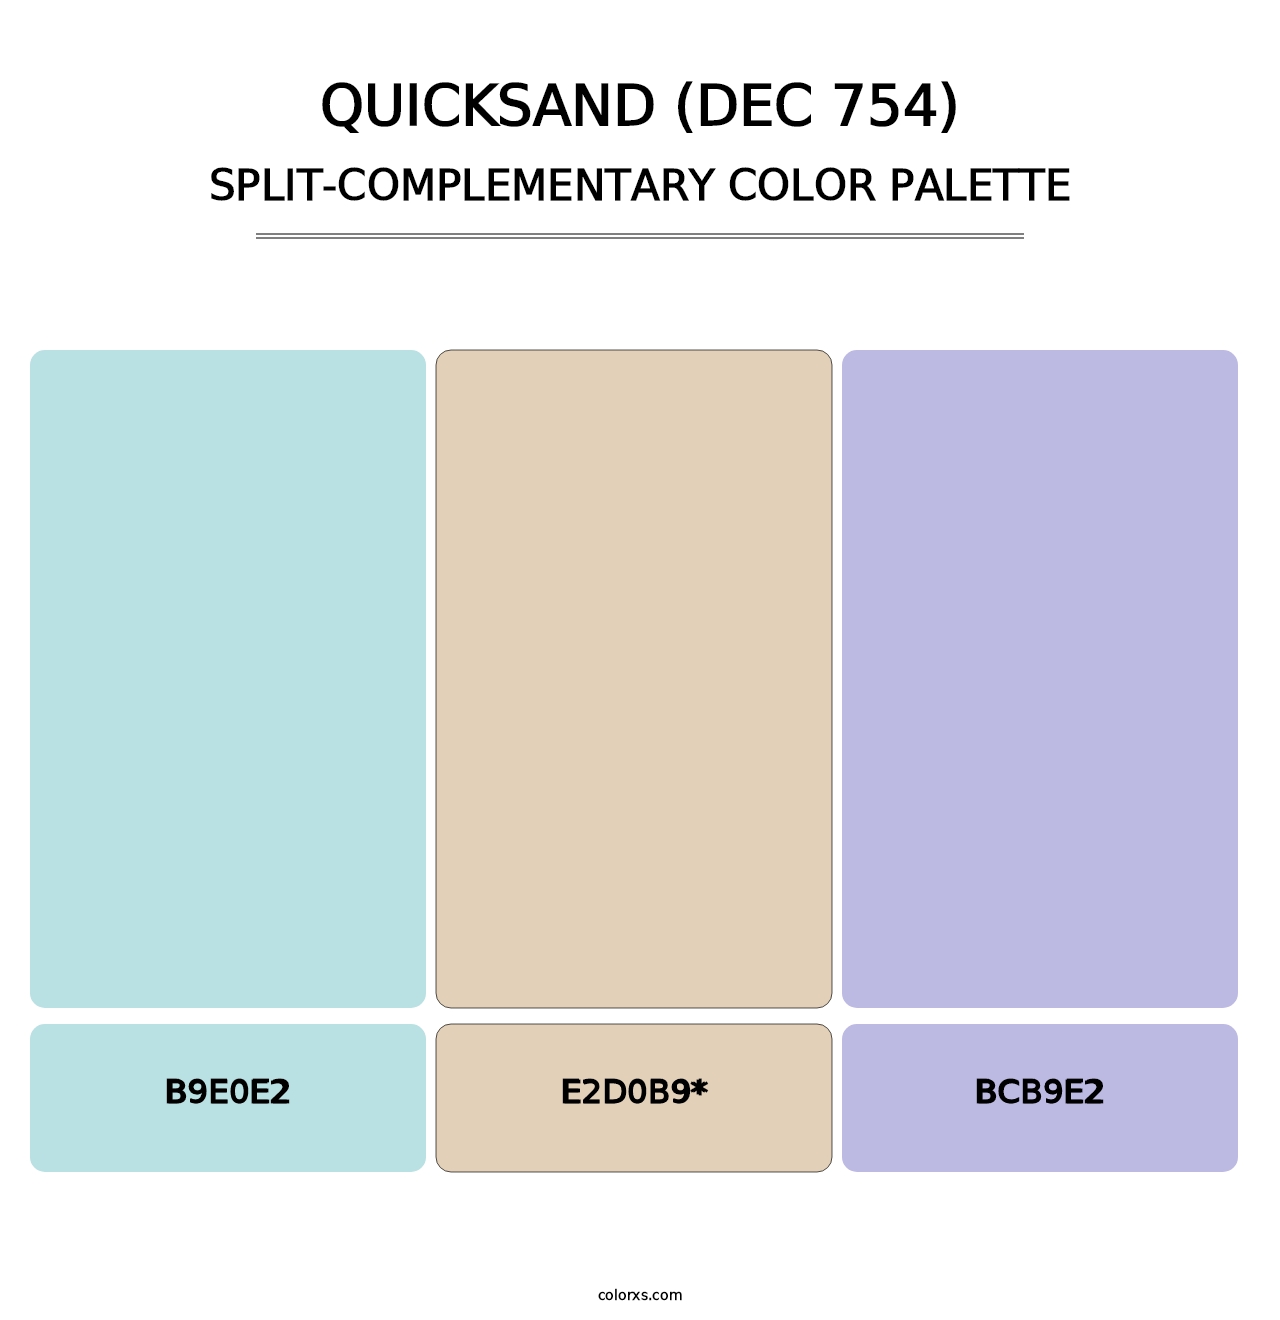 Quicksand (DEC 754) - Split-Complementary Color Palette